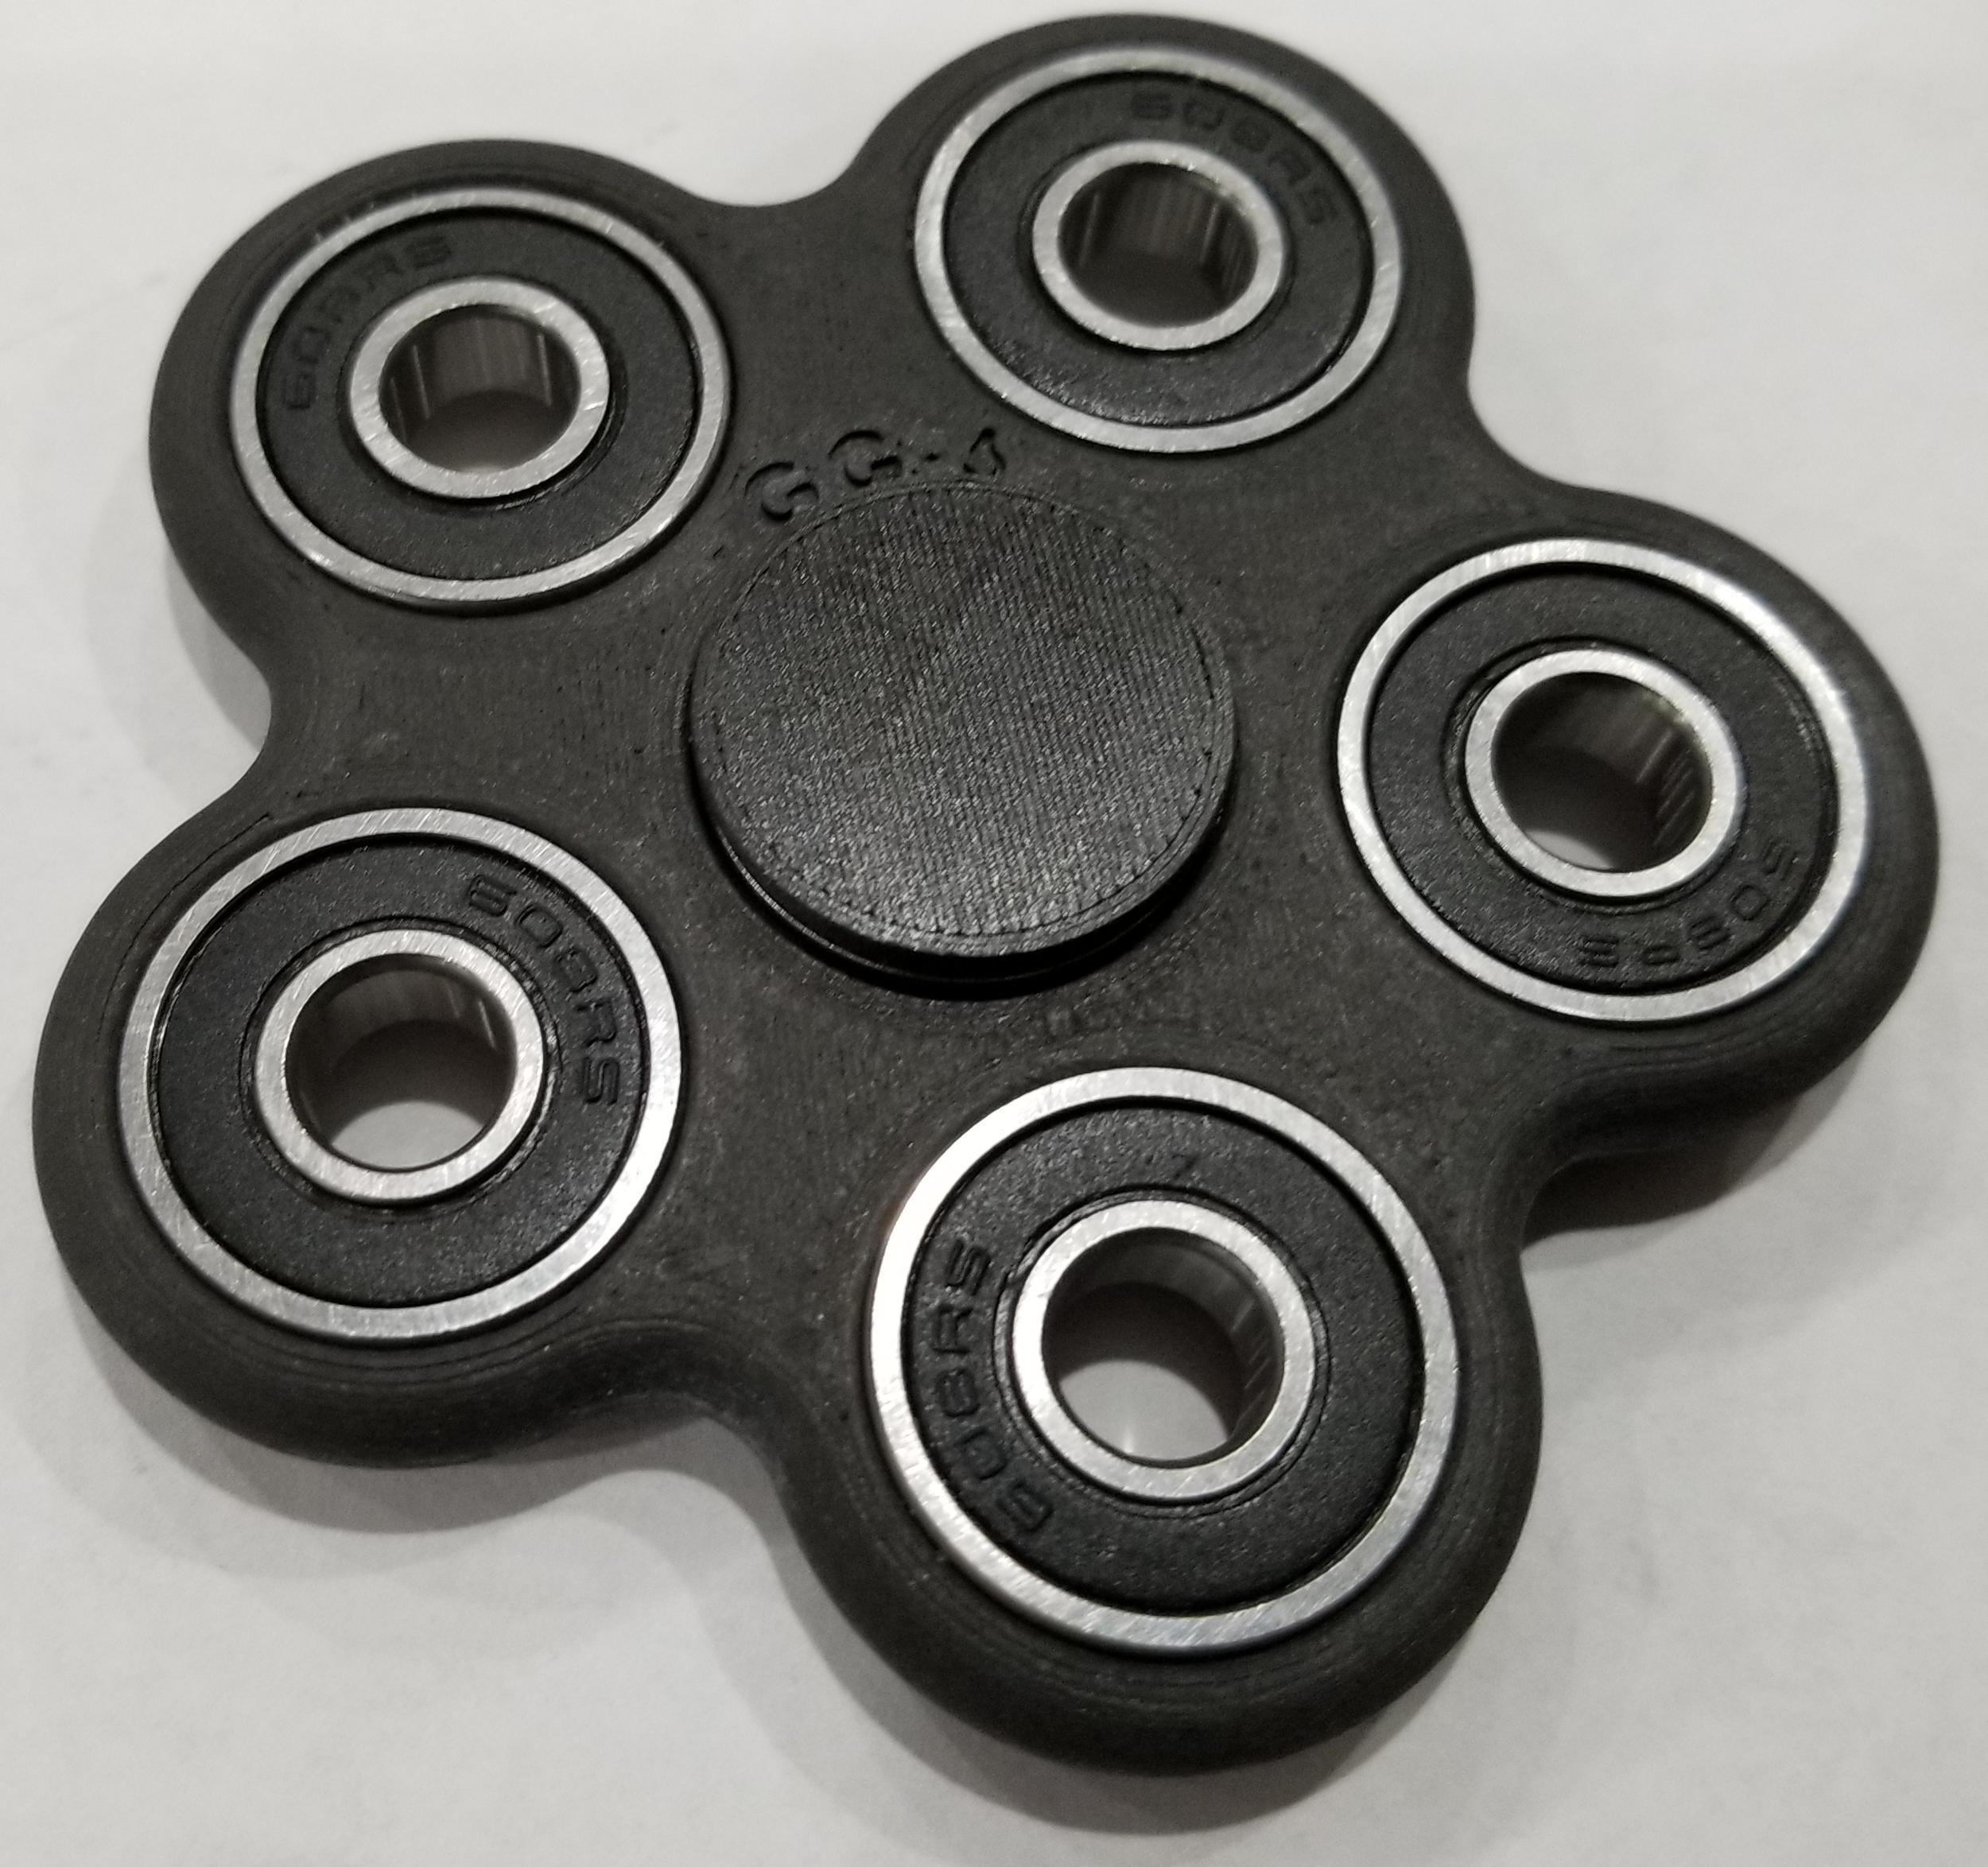 GG-6 Black Carbon 5-Lobe Fidget Spinner